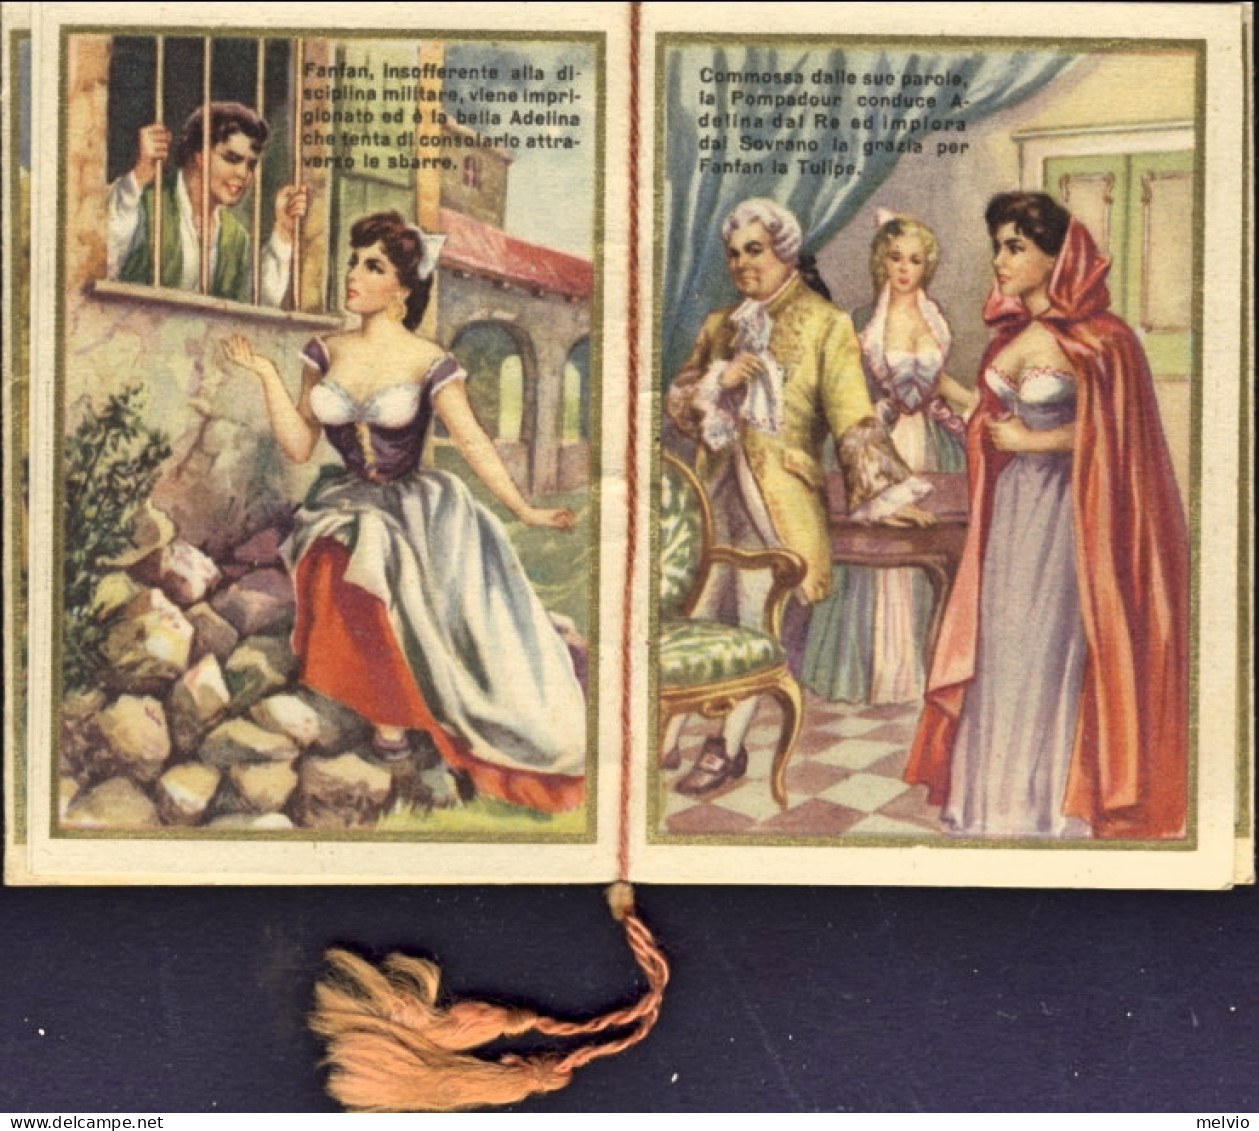 1954-"Fanfan La Tulipe"calendario 6,5x8,8 Cm. In Ottime Condizioni - Small : 1941-60